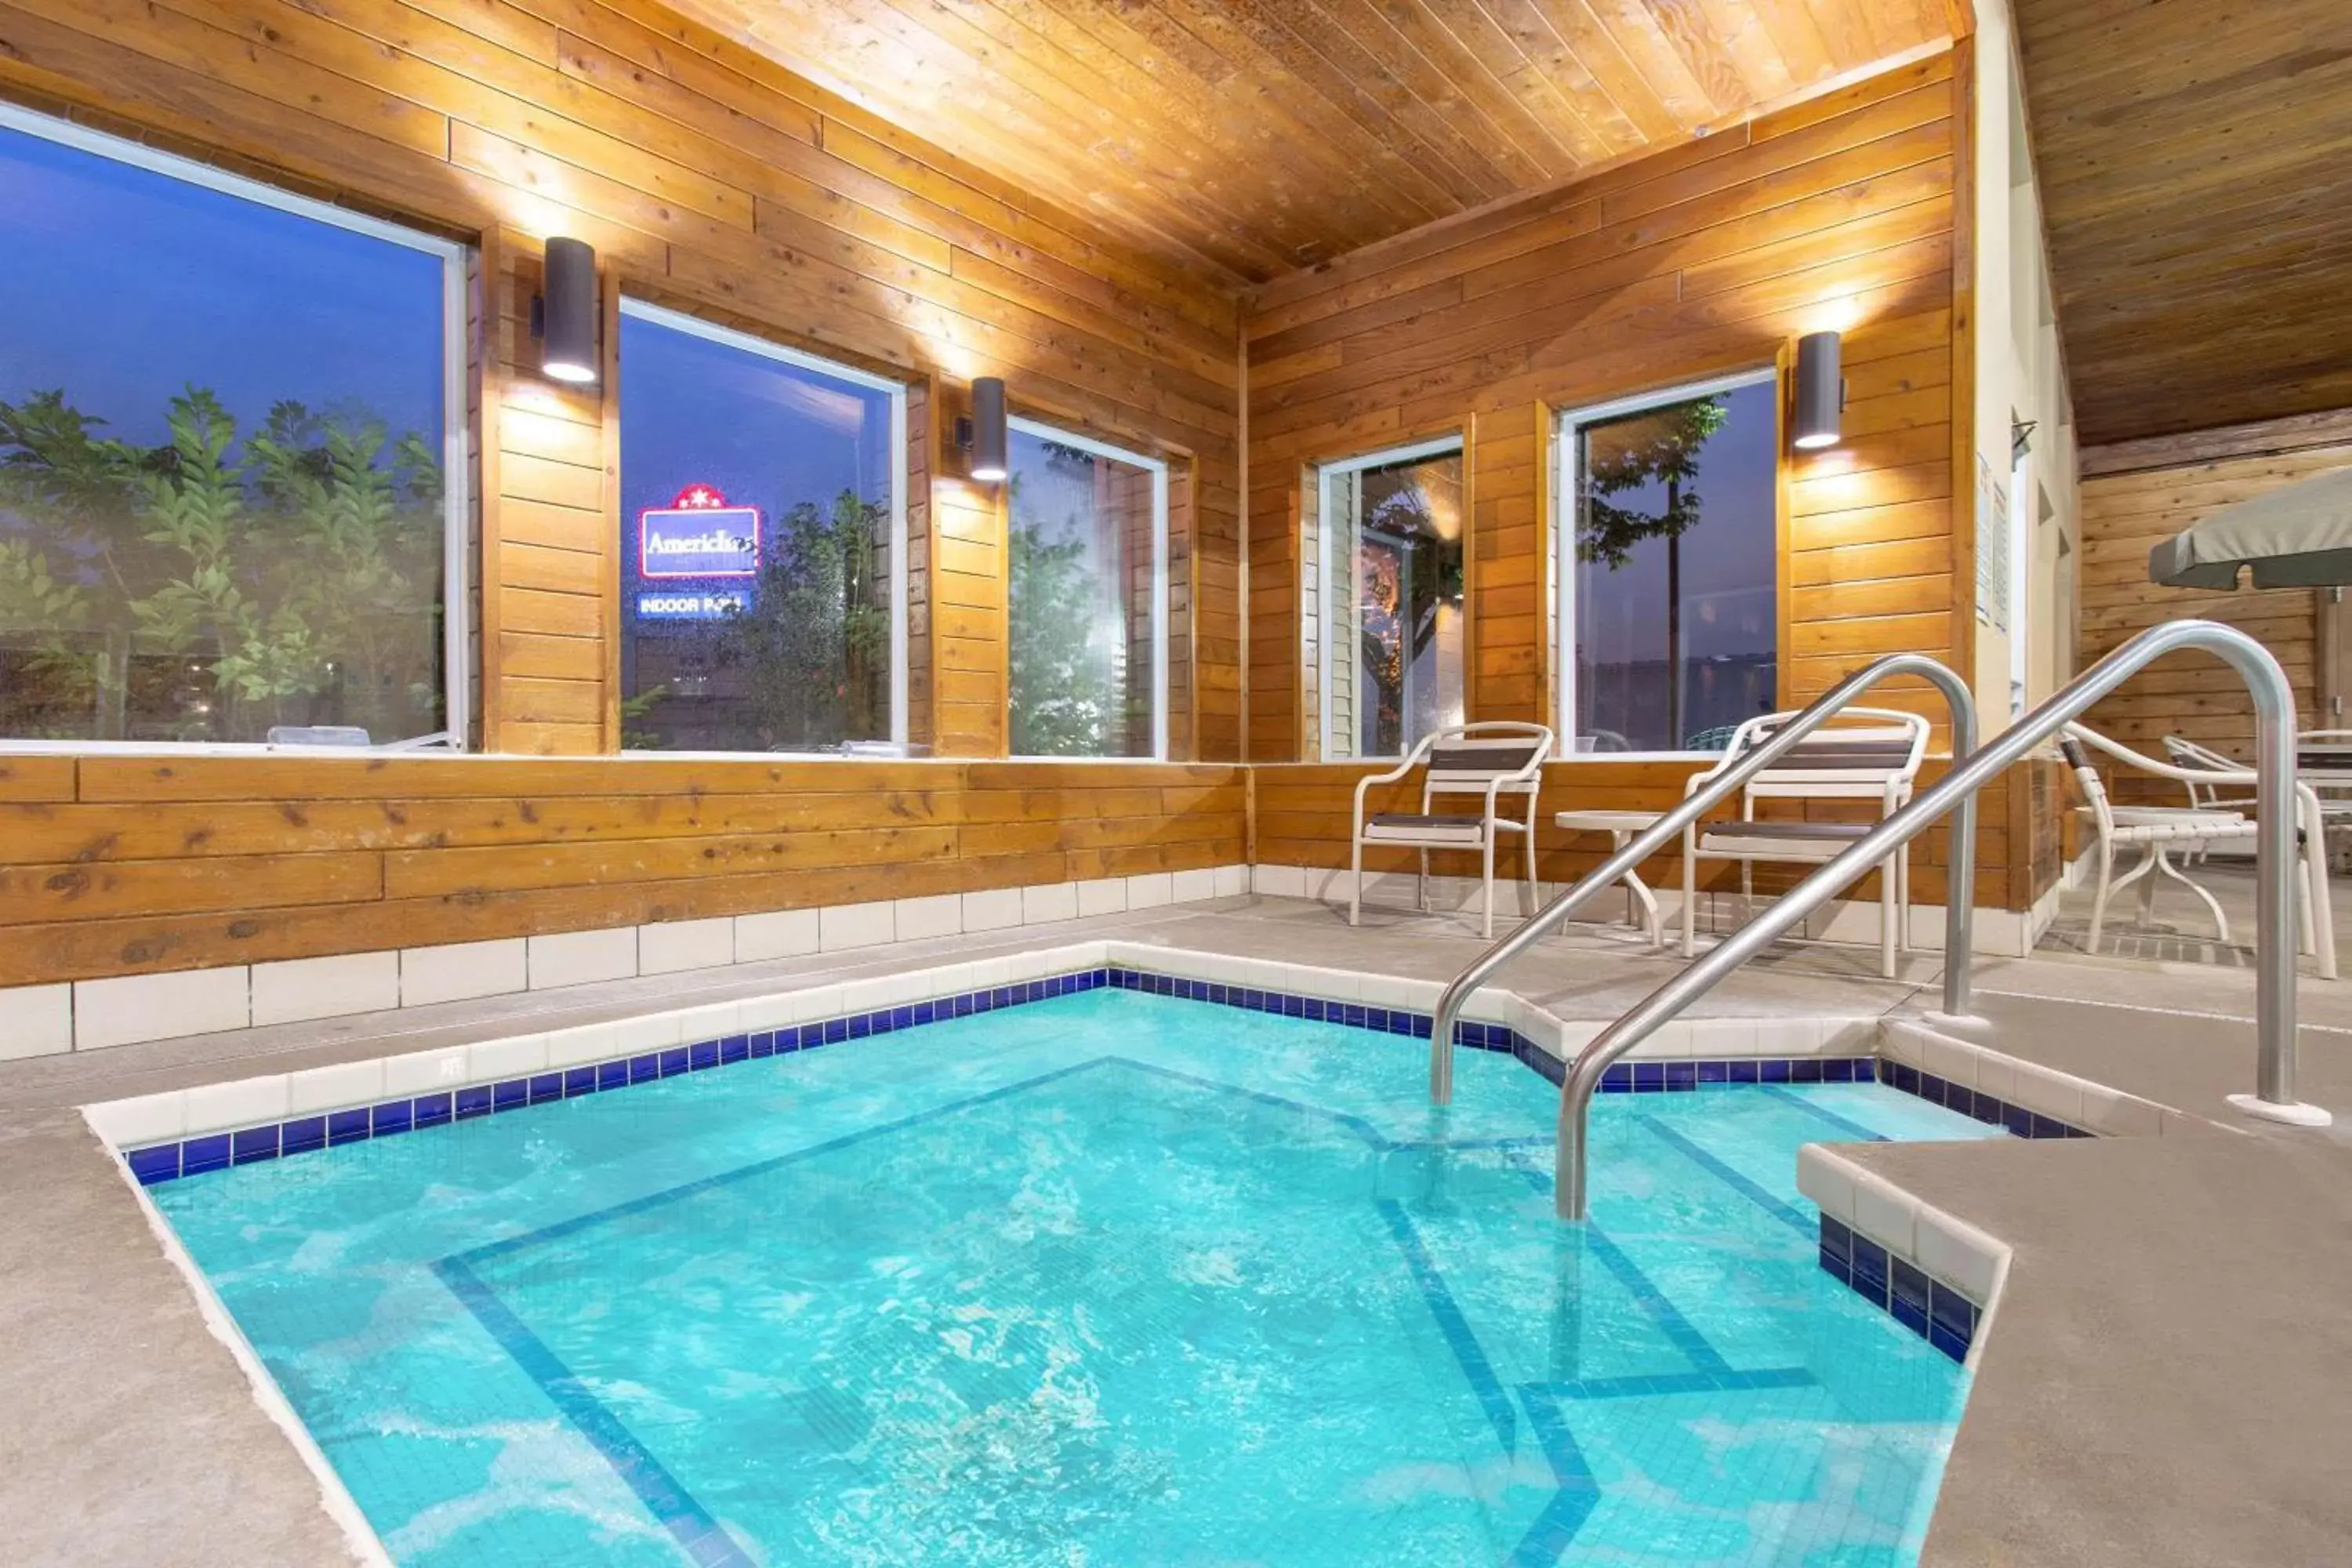 Hot Tub, Swimming Pool in AmericInn by Wyndham Boscobel